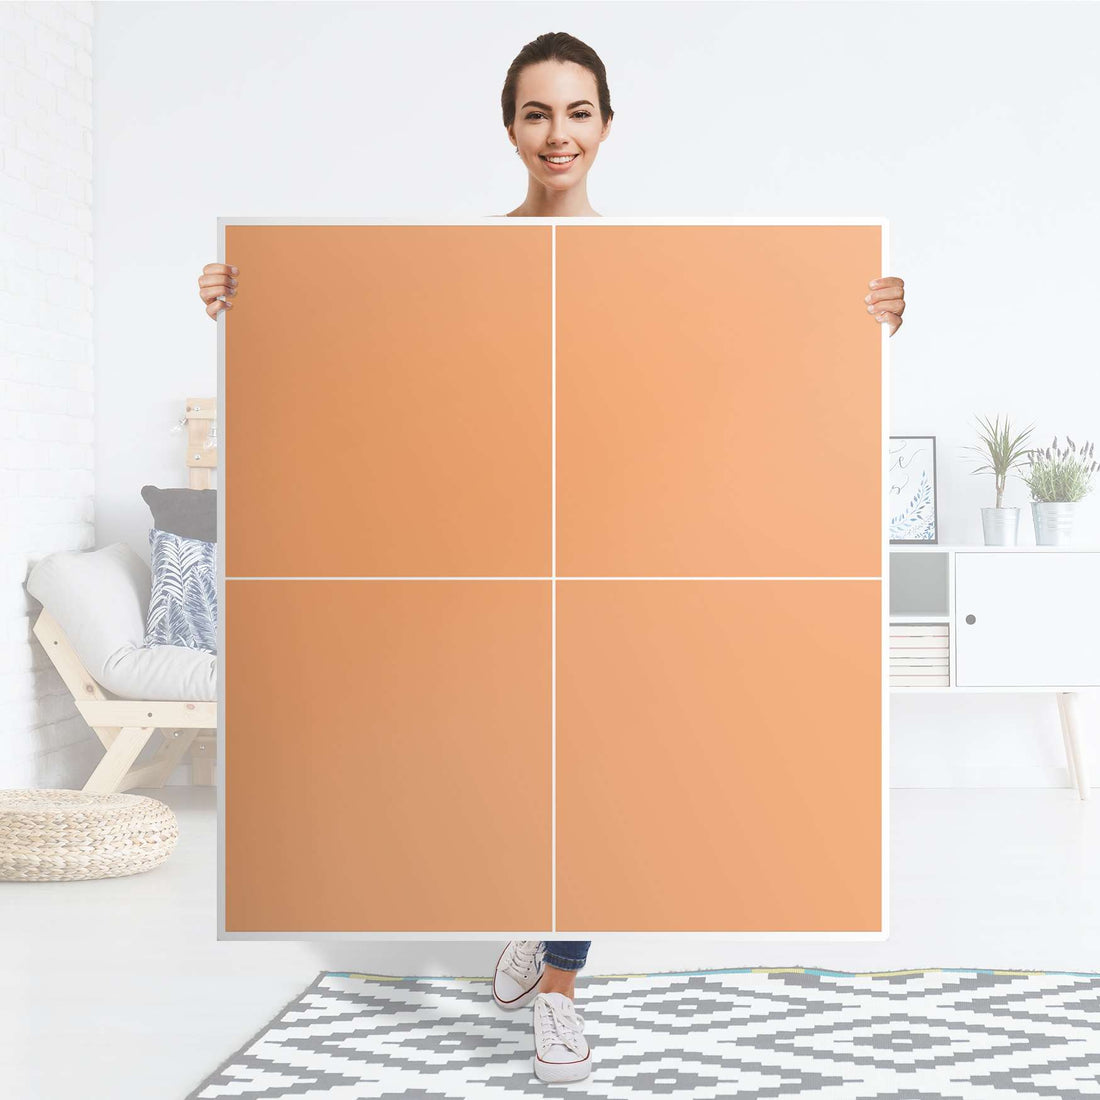 Klebefolie für Schränke Orange Light - IKEA Besta Schrank Quadratisch 4 Türen - Folie